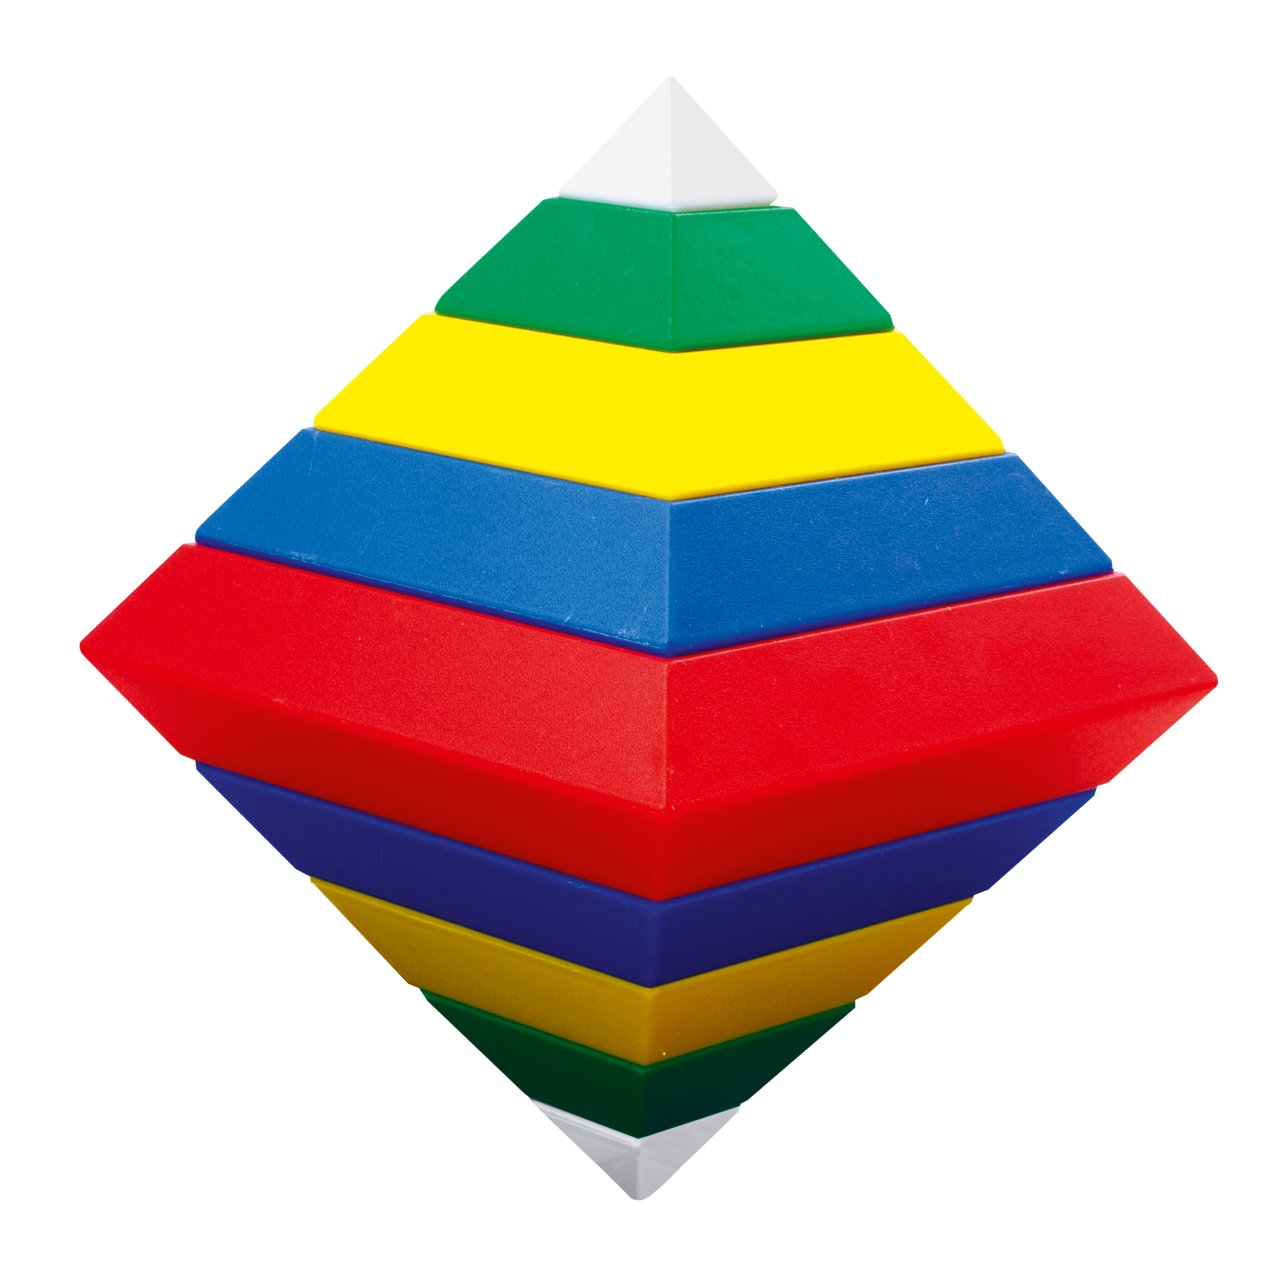 15 Stücke Unbekannt Pyramide Veränderbare Blöcke Turm DIY Bausteine Kinder Pädagogisches Spielzeug 